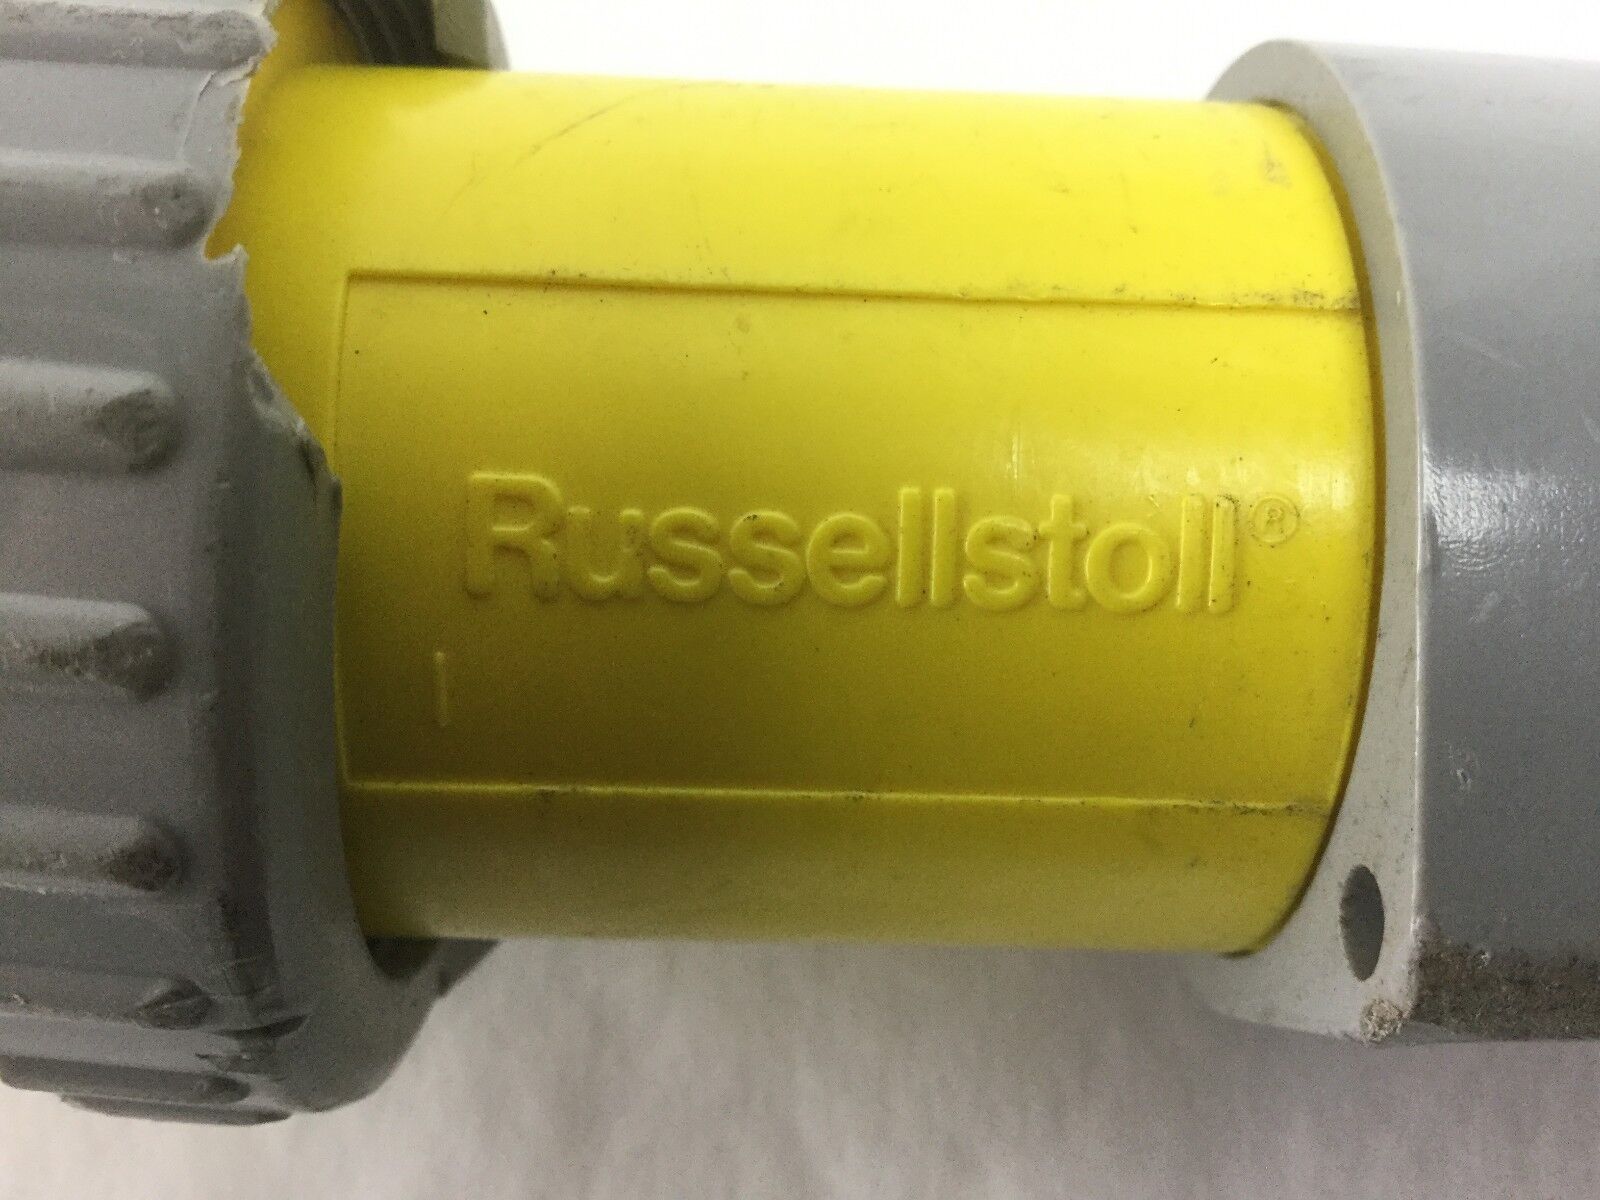 T&B Russellstoll, 9P63U2T (60A 250VAC IP67), Cracked Flange Lock